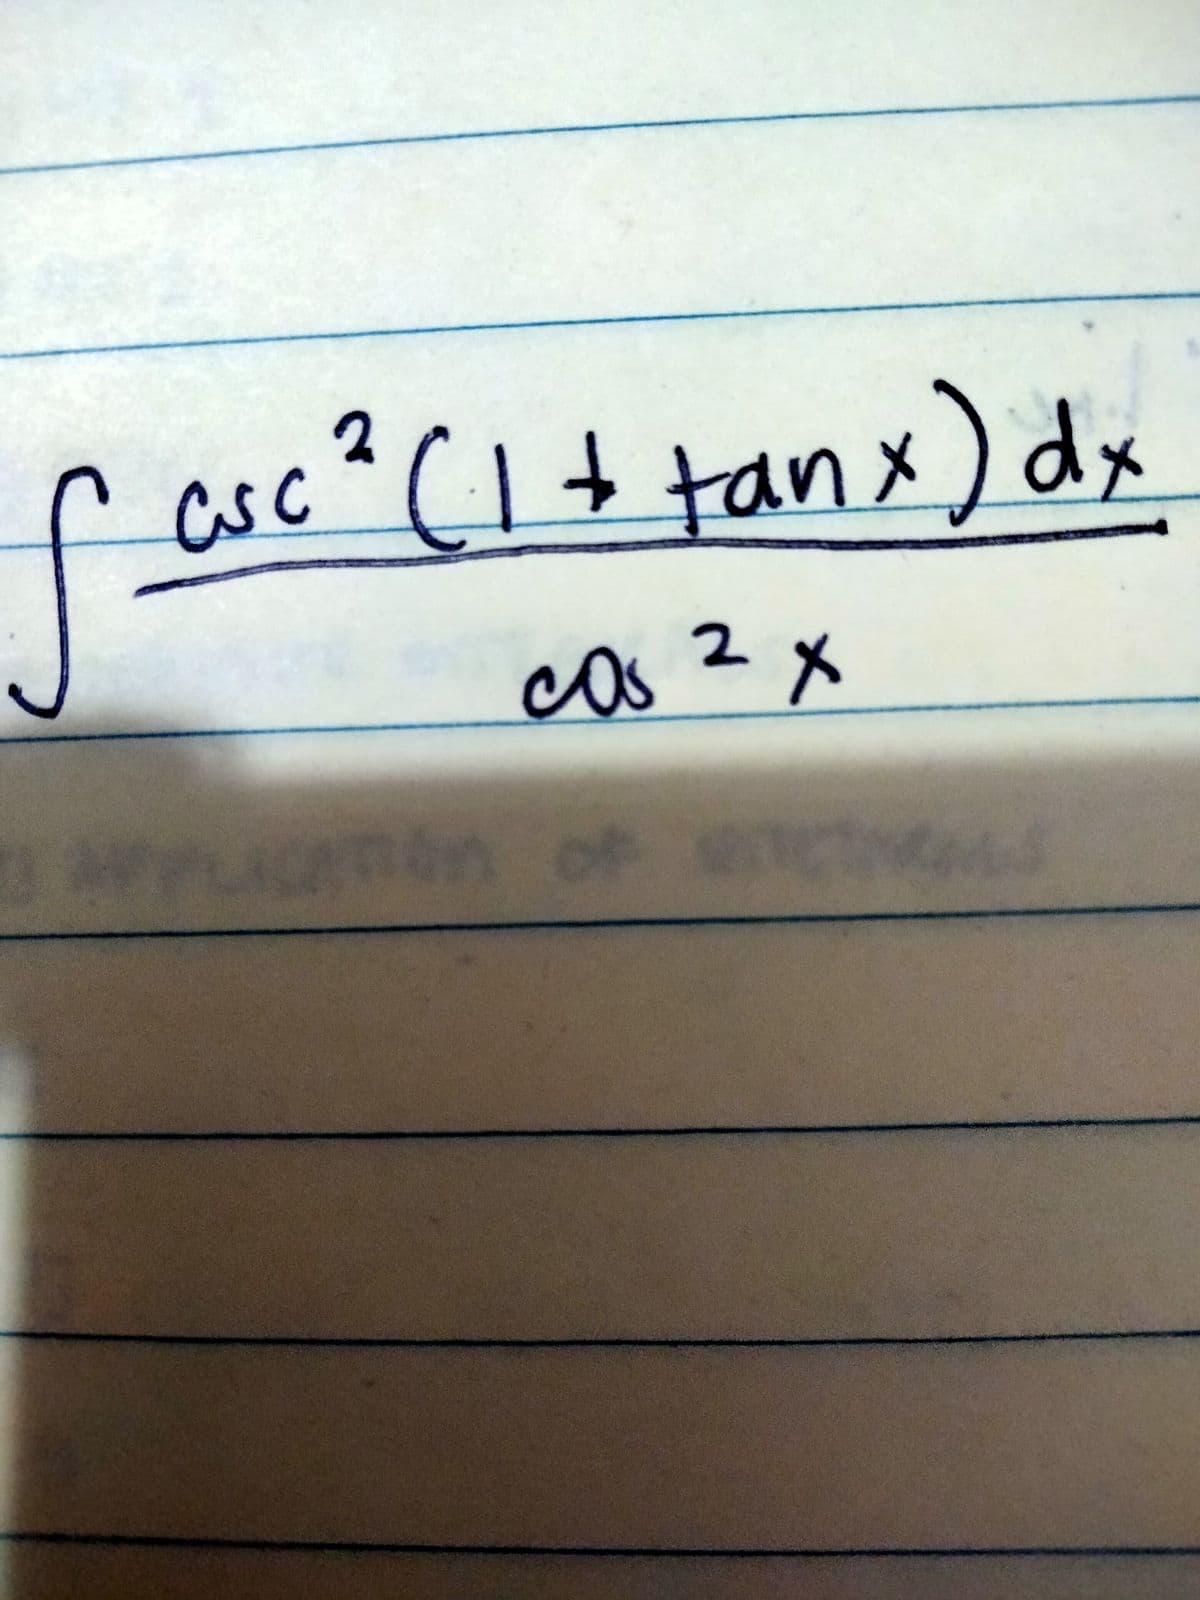 fasc (1+tanx) dx
ir
cos
os 2x
16n of a
